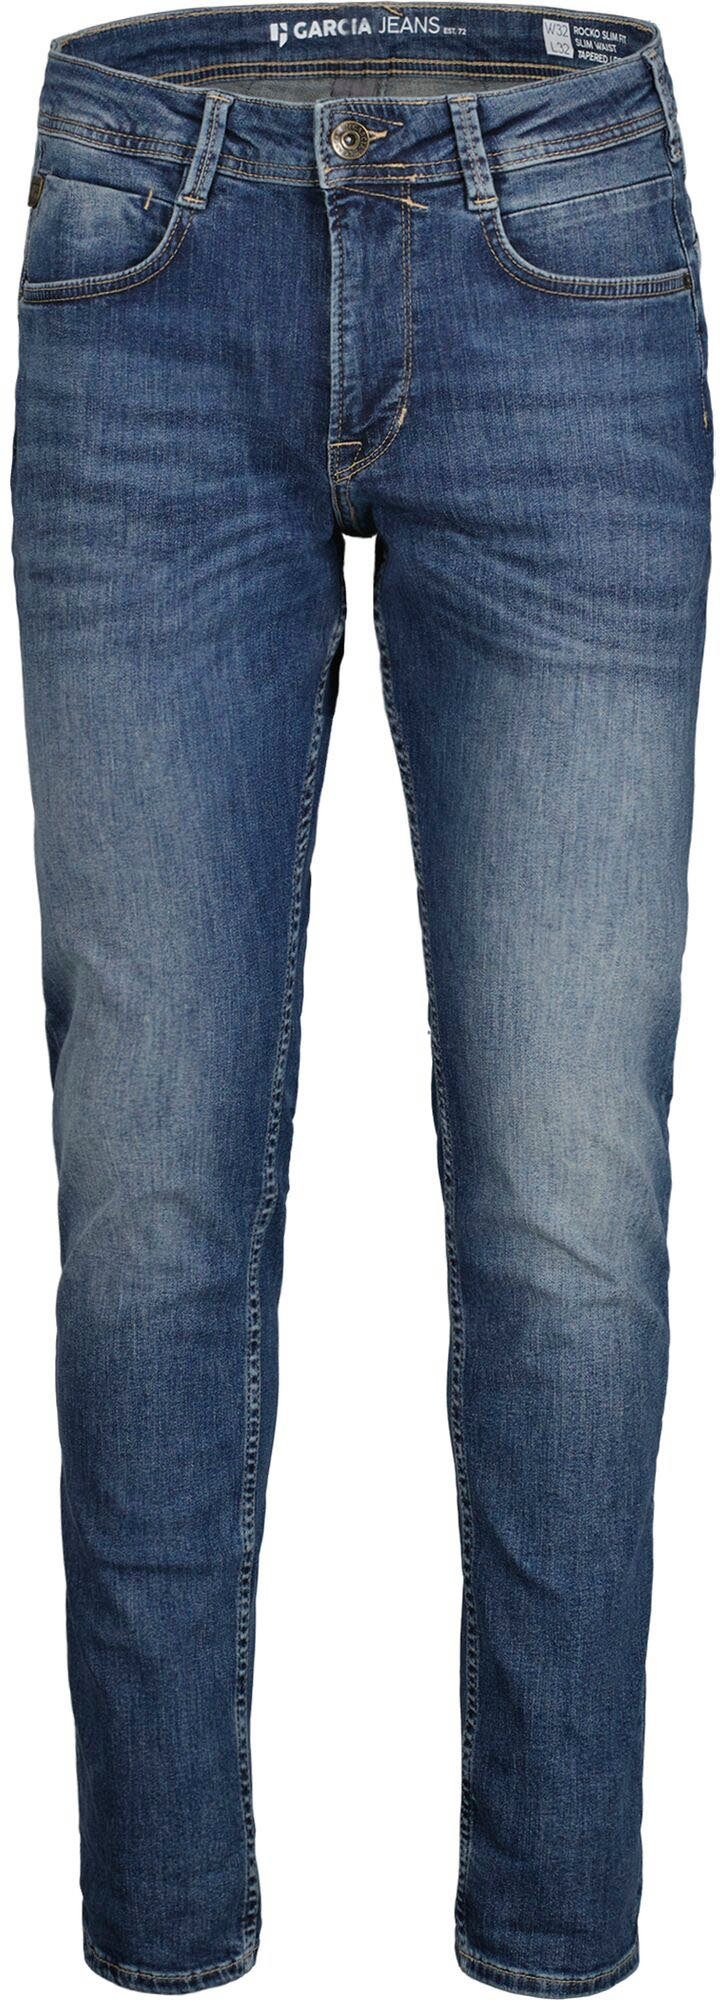 Garcia 5-Pocket-Jeans Rocko in verschiedenen medium used Waschungen